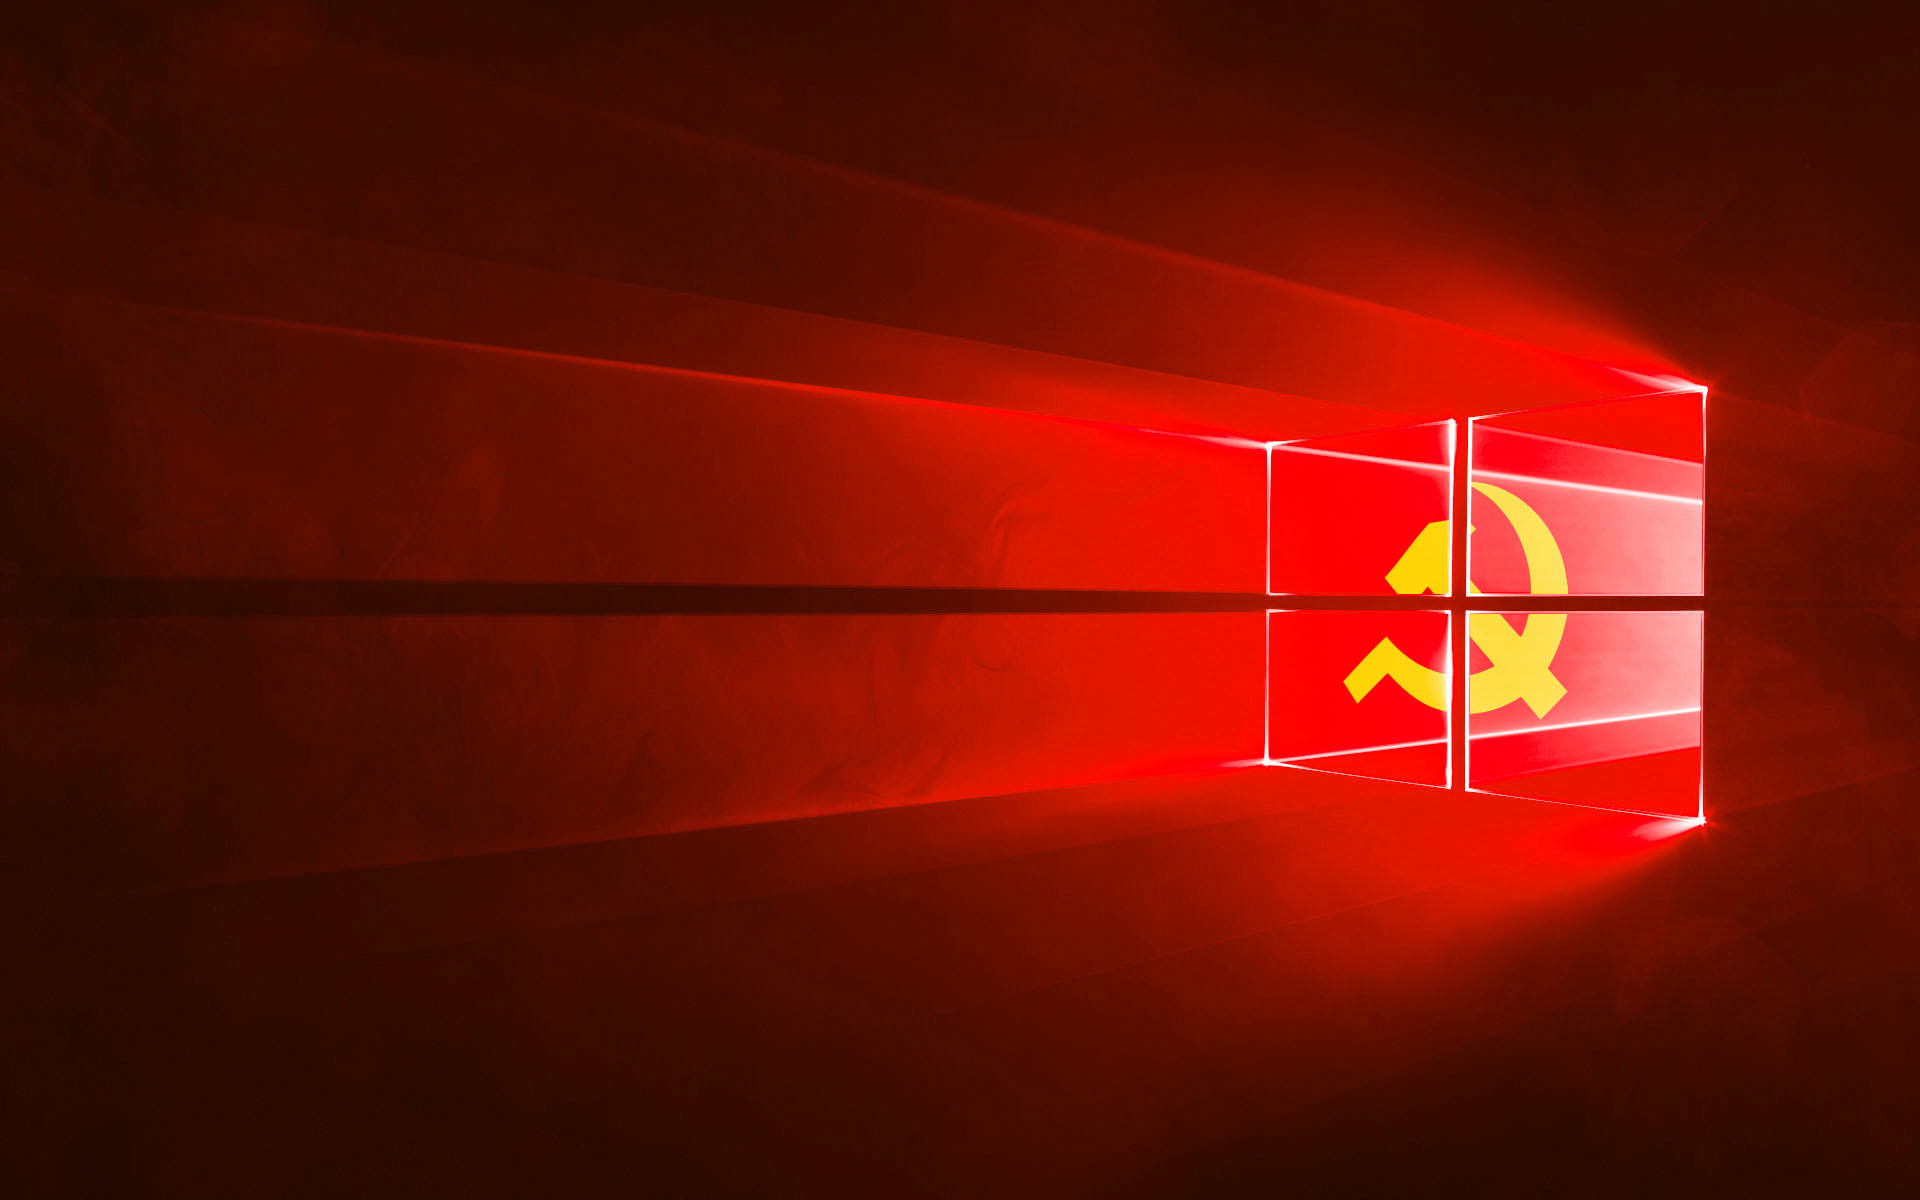 Windows 10 Red Digital USSR Communism Wallpaper: Hình nền Windows 10 đầy sức mạnh và cách mạng, kết hợp giữa màu đỏ, kỹ thuật số, và chủ nghĩa cộng sản Liên Xô. Hãy xem ảnh để cảm nhận sự táo bạo của bức tranh này.